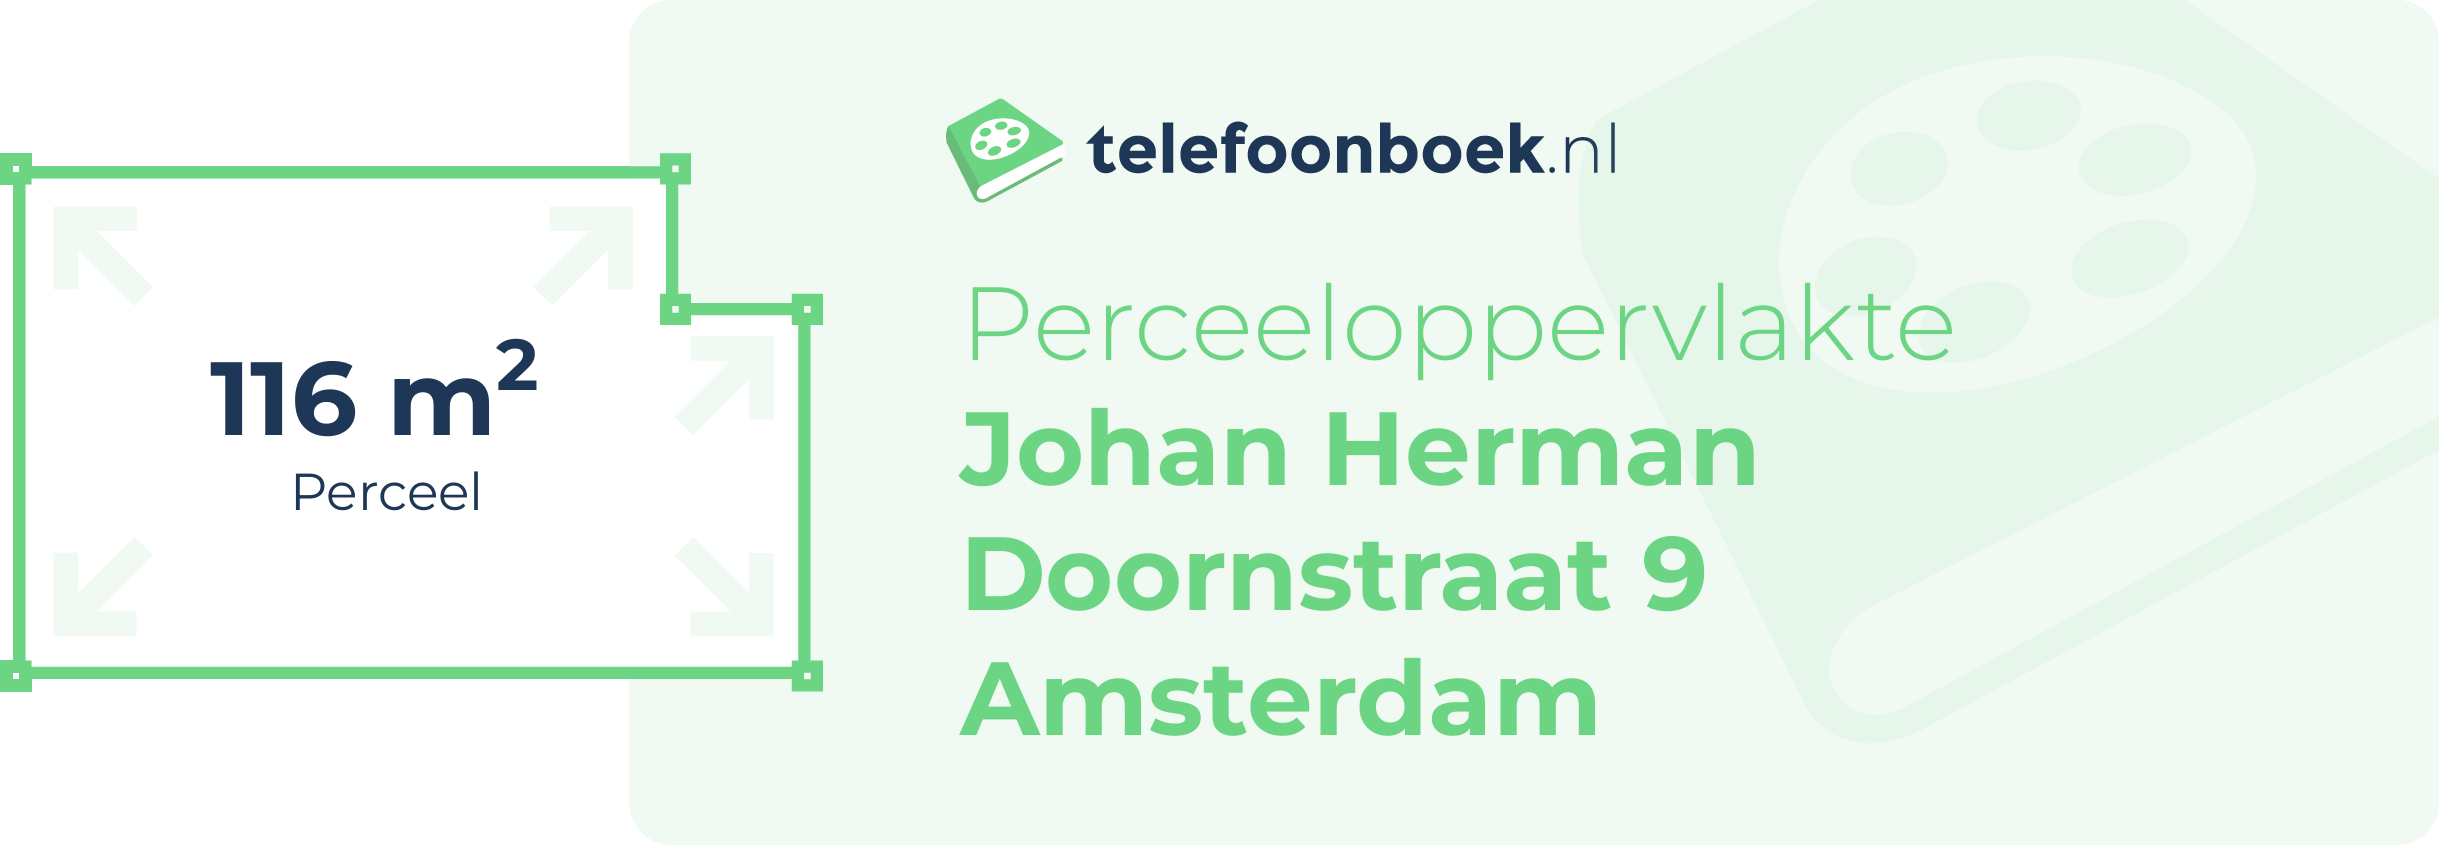 Perceeloppervlakte Johan Herman Doornstraat 9 Amsterdam